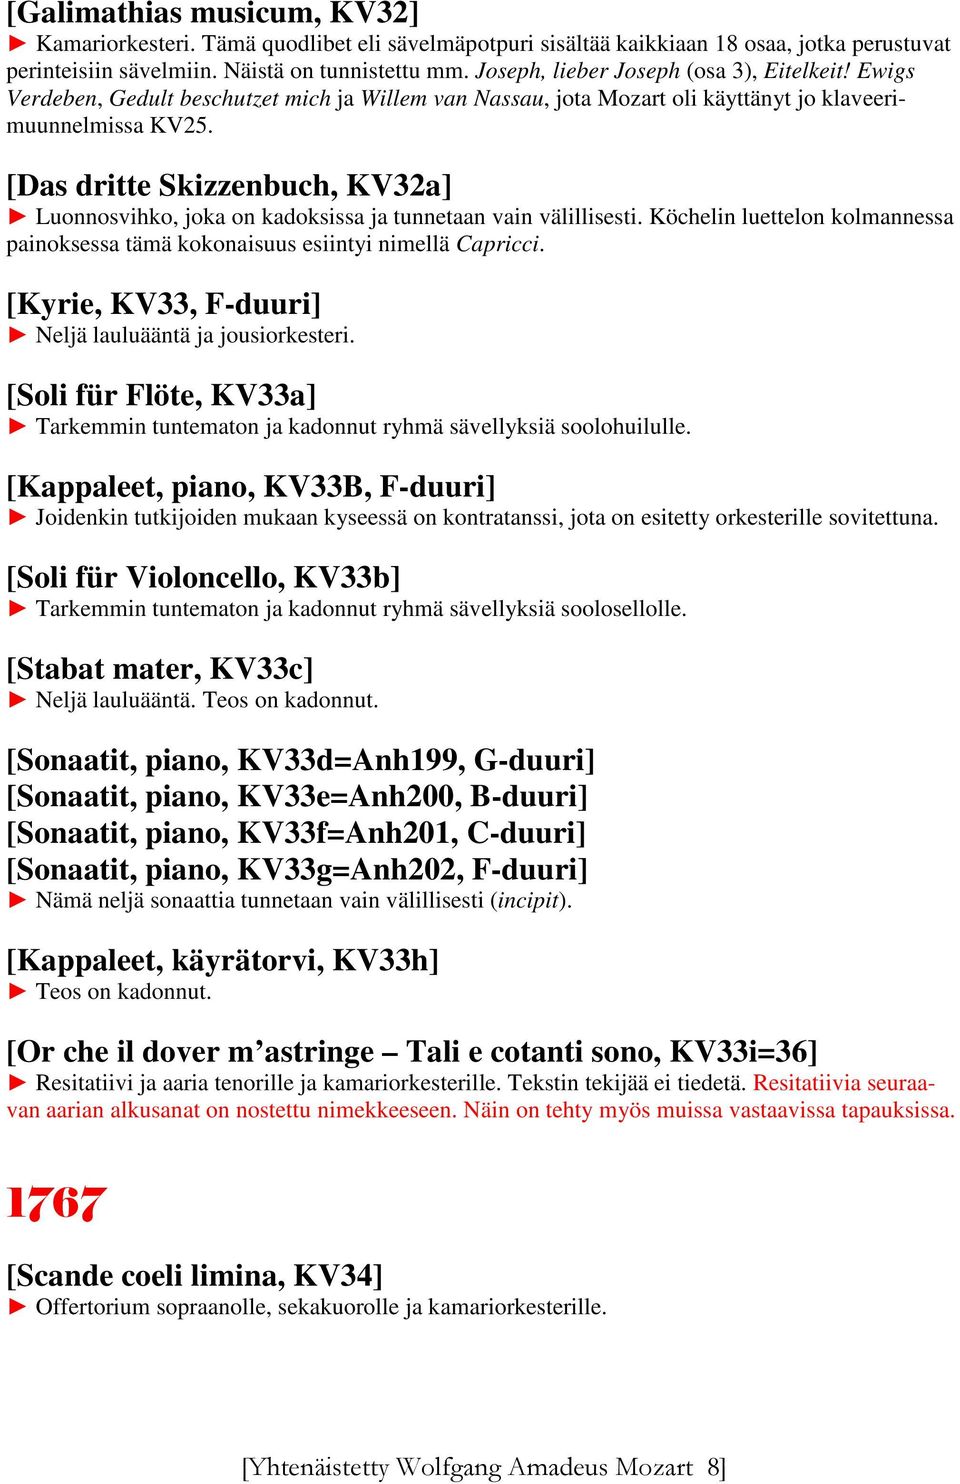 [Das dritte Skizzenbuch, KV32a] Luonnosvihko, joka on kadoksissa ja tunnetaan vain välillisesti. Köchelin luettelon kolmannessa painoksessa tämä kokonaisuus esiintyi nimellä Capricci.